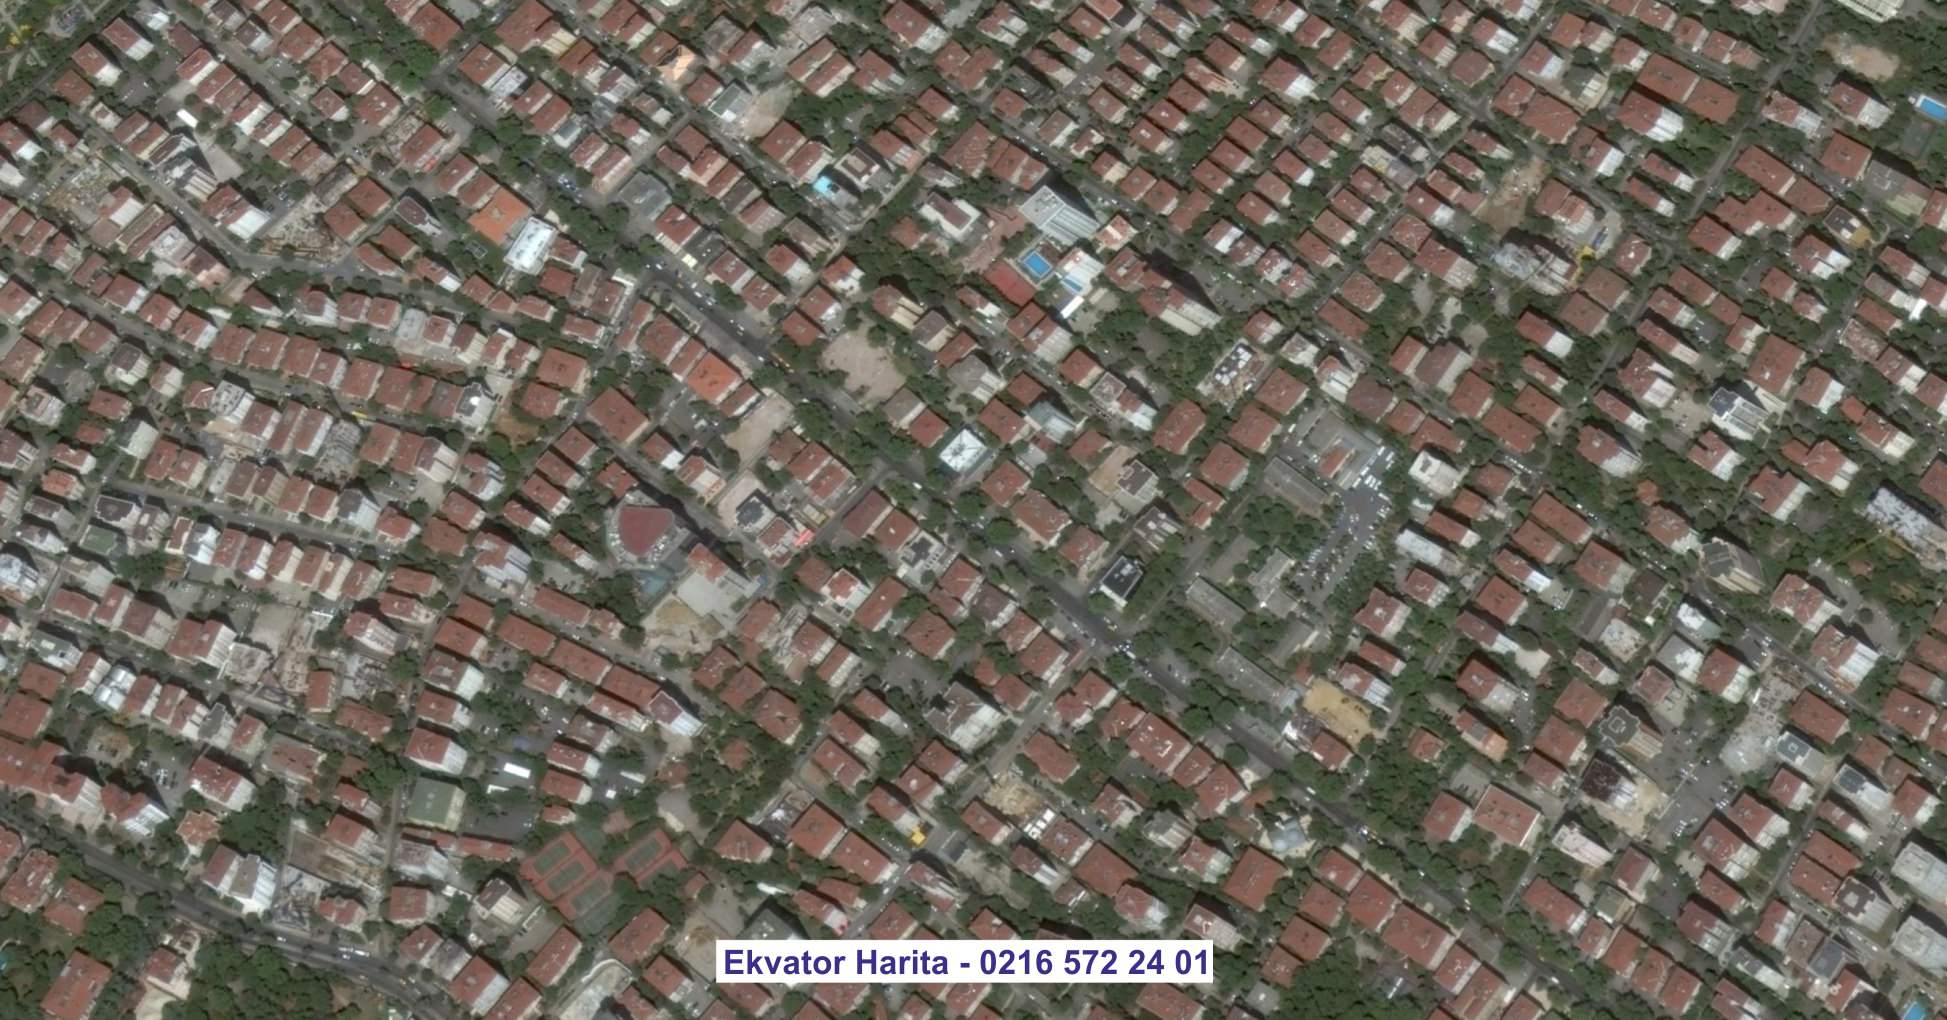 İçel Uydu Görüntüsü Örnek Fotoğrafı